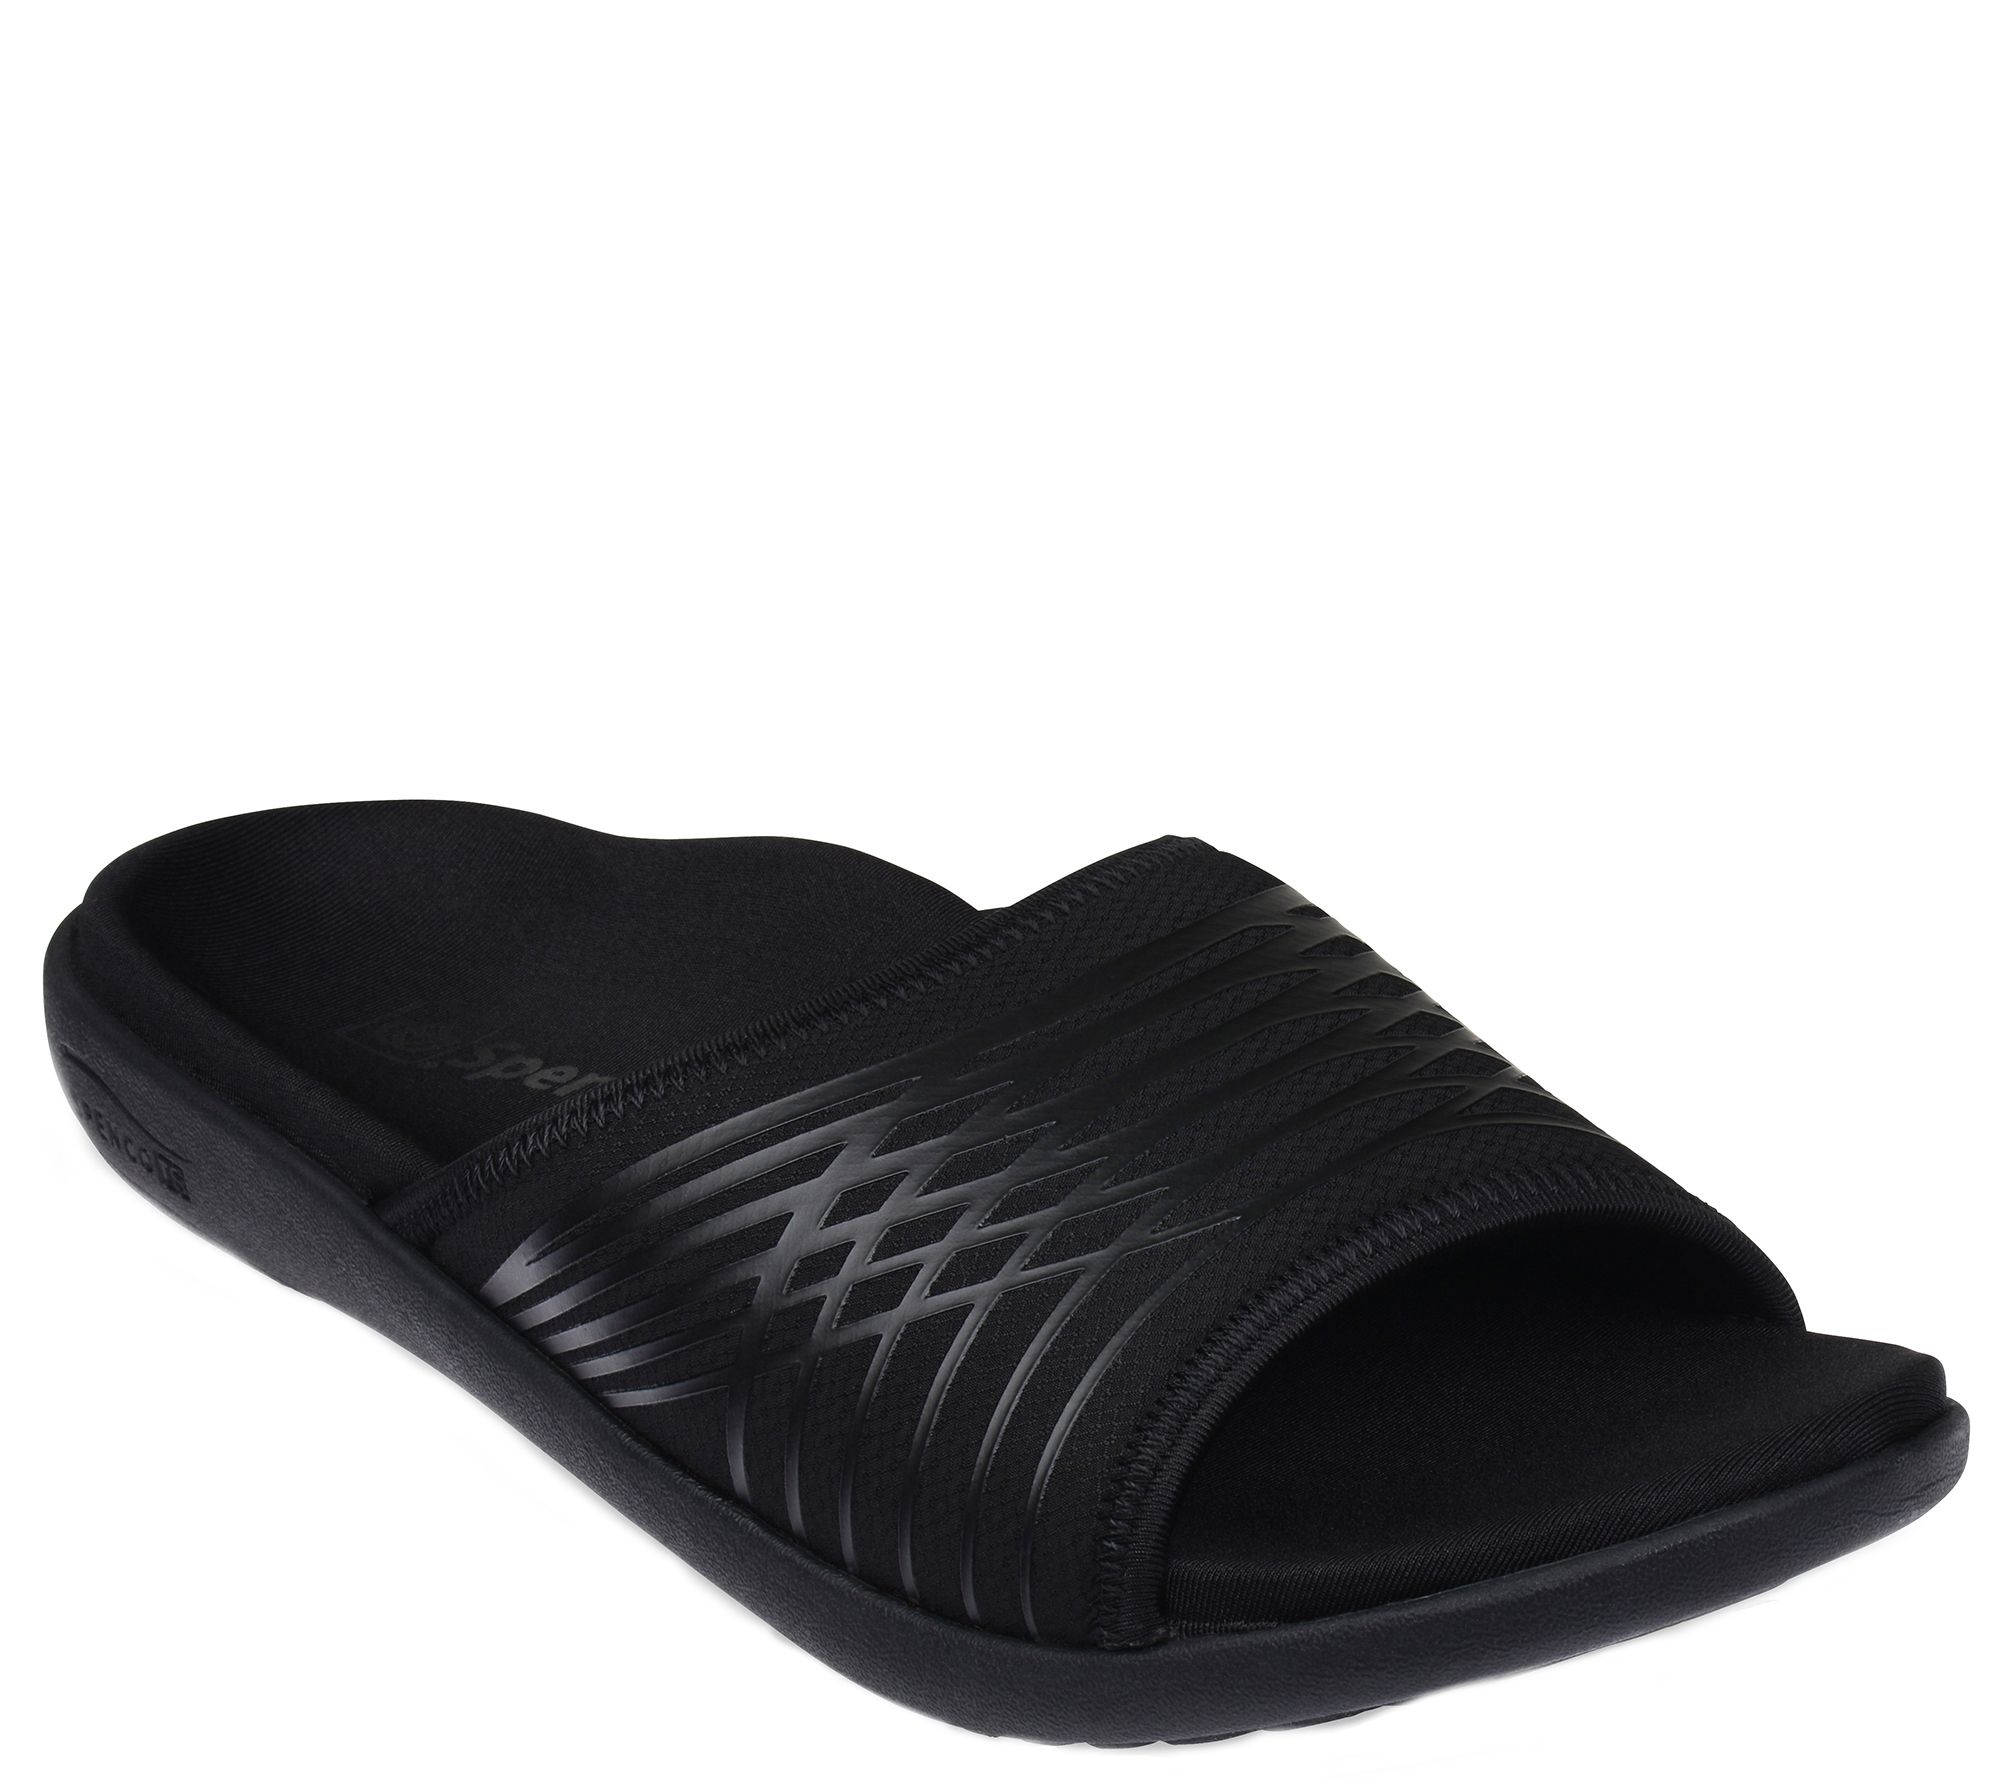 Spenco Men's Slide Sandals - Thrust — QVC.com